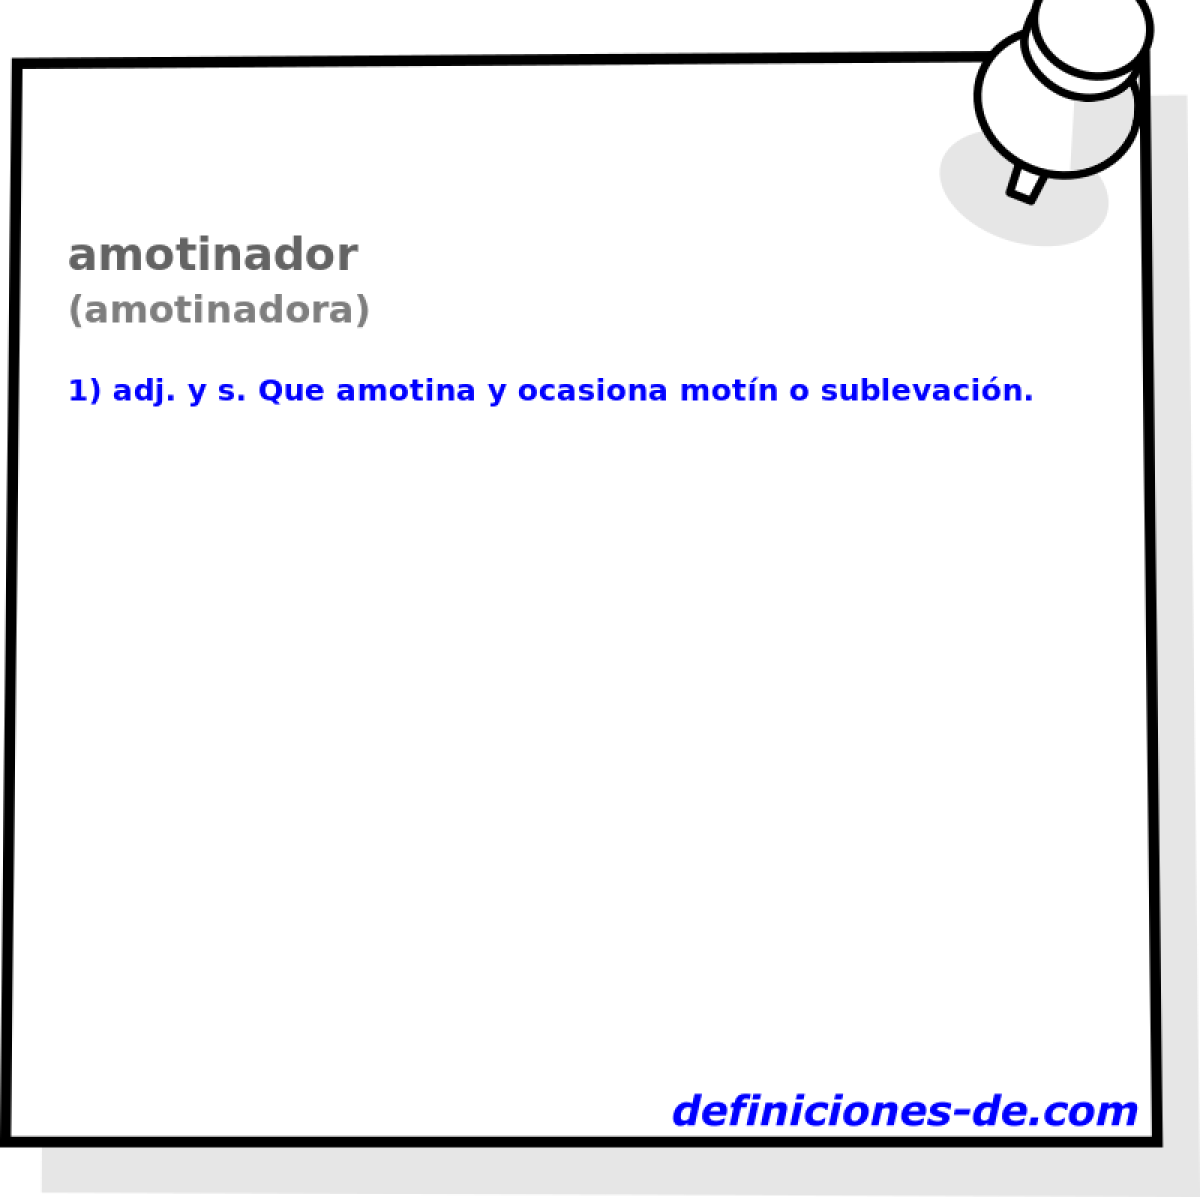 amotinador (amotinadora)